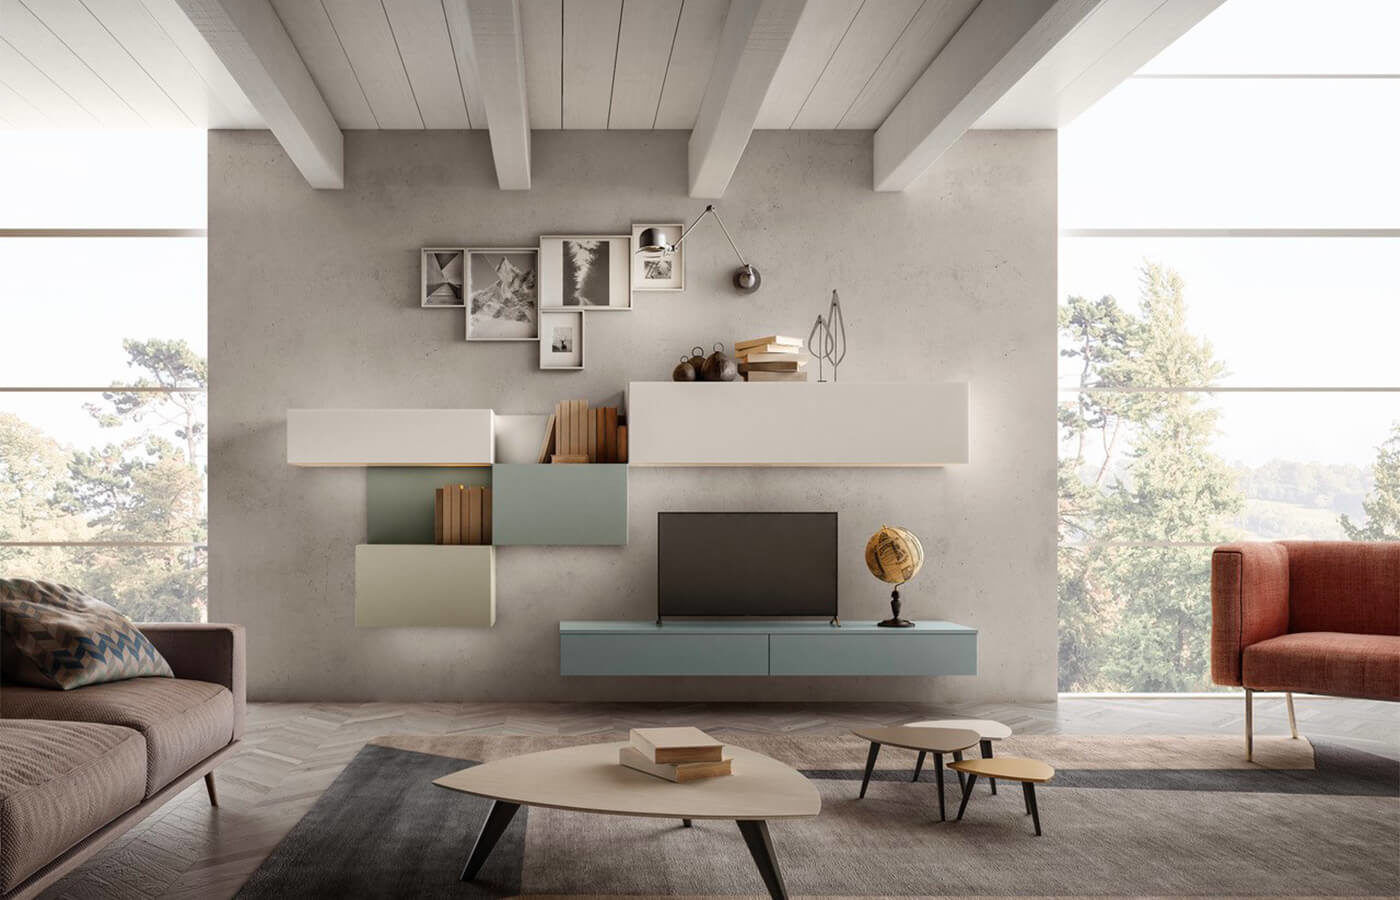 Parete soggiorno a bussolotti L&M design di Cinzia Marelli Sala da pranzo moderna living,progettazione monza,parete soggiorno,parete sospesa